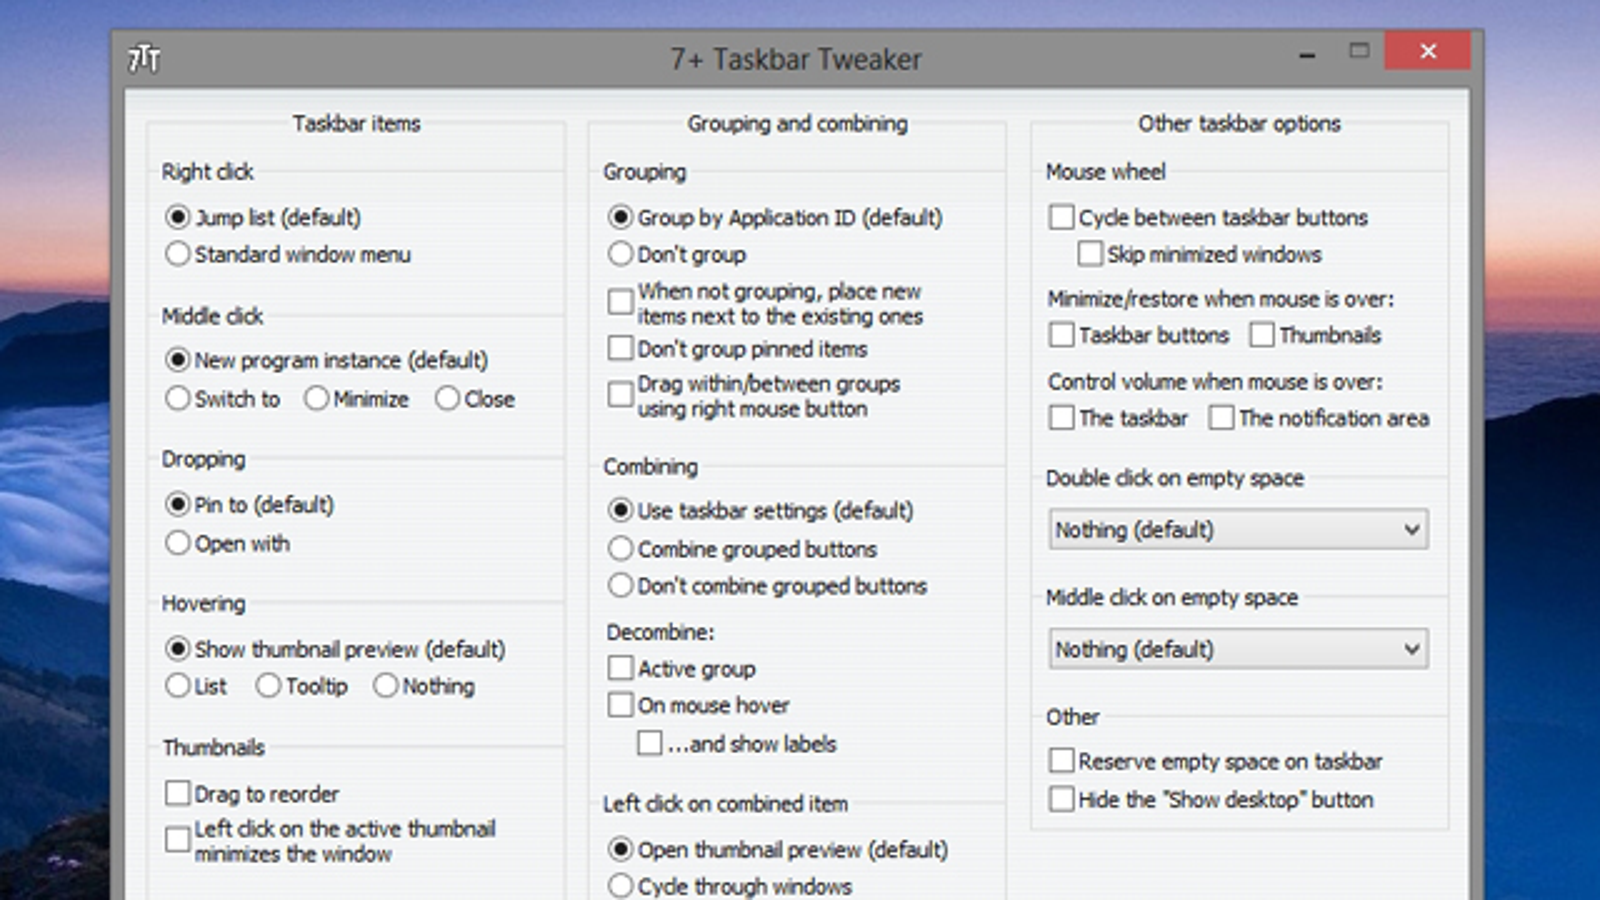 7+ Taskbar Tweaker 5.14.3.0 download the new for apple